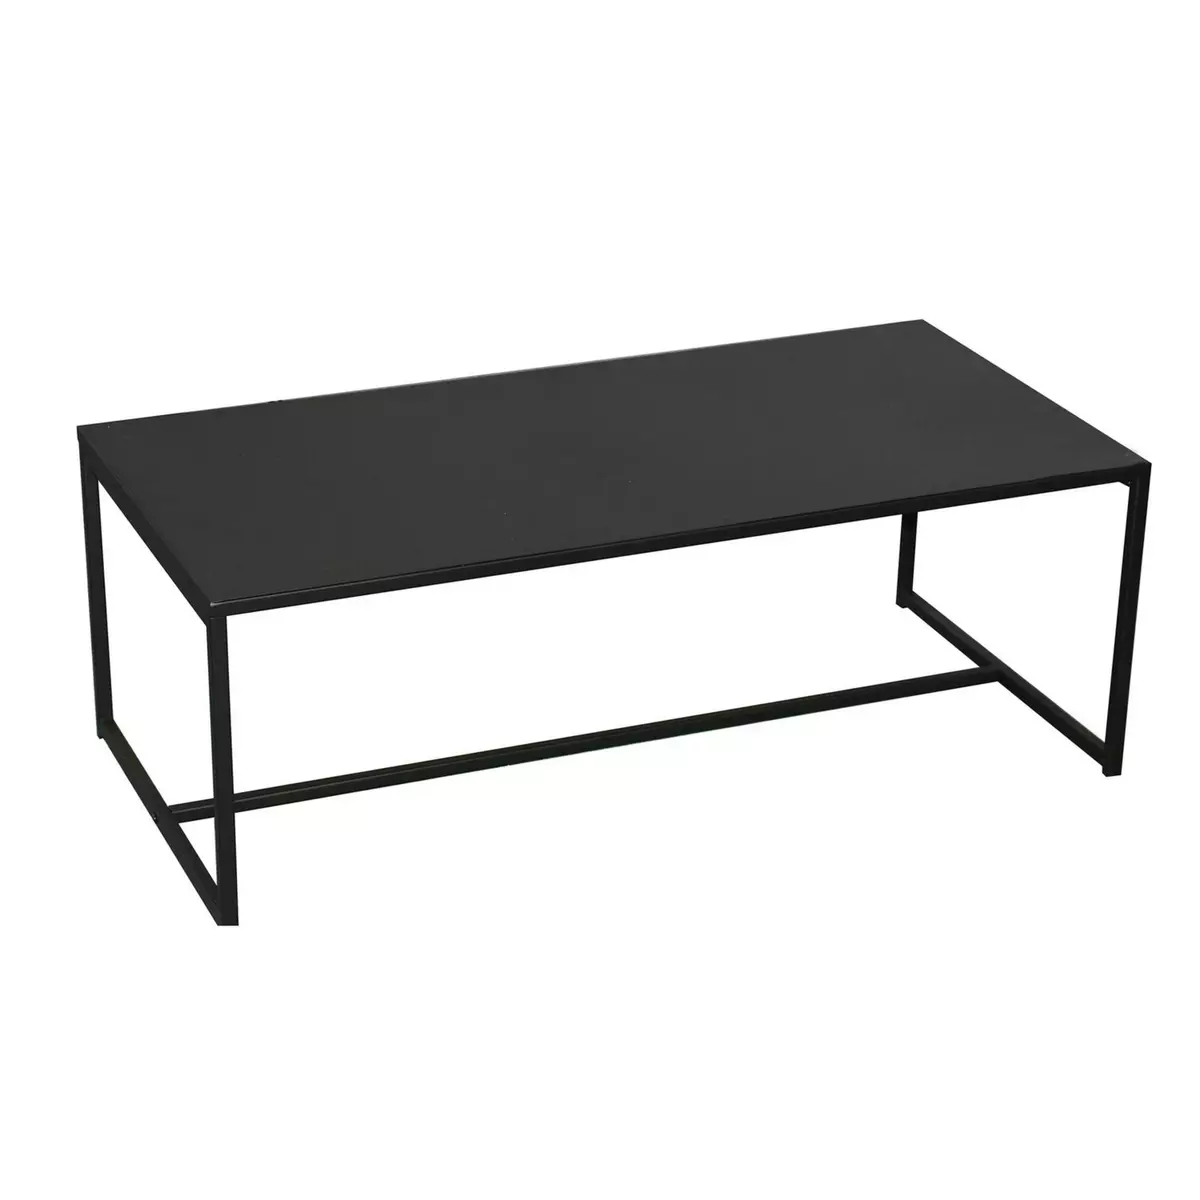 DIVERS Table basse design en métal Madison - L. 100 x H. 36 cm - Noir